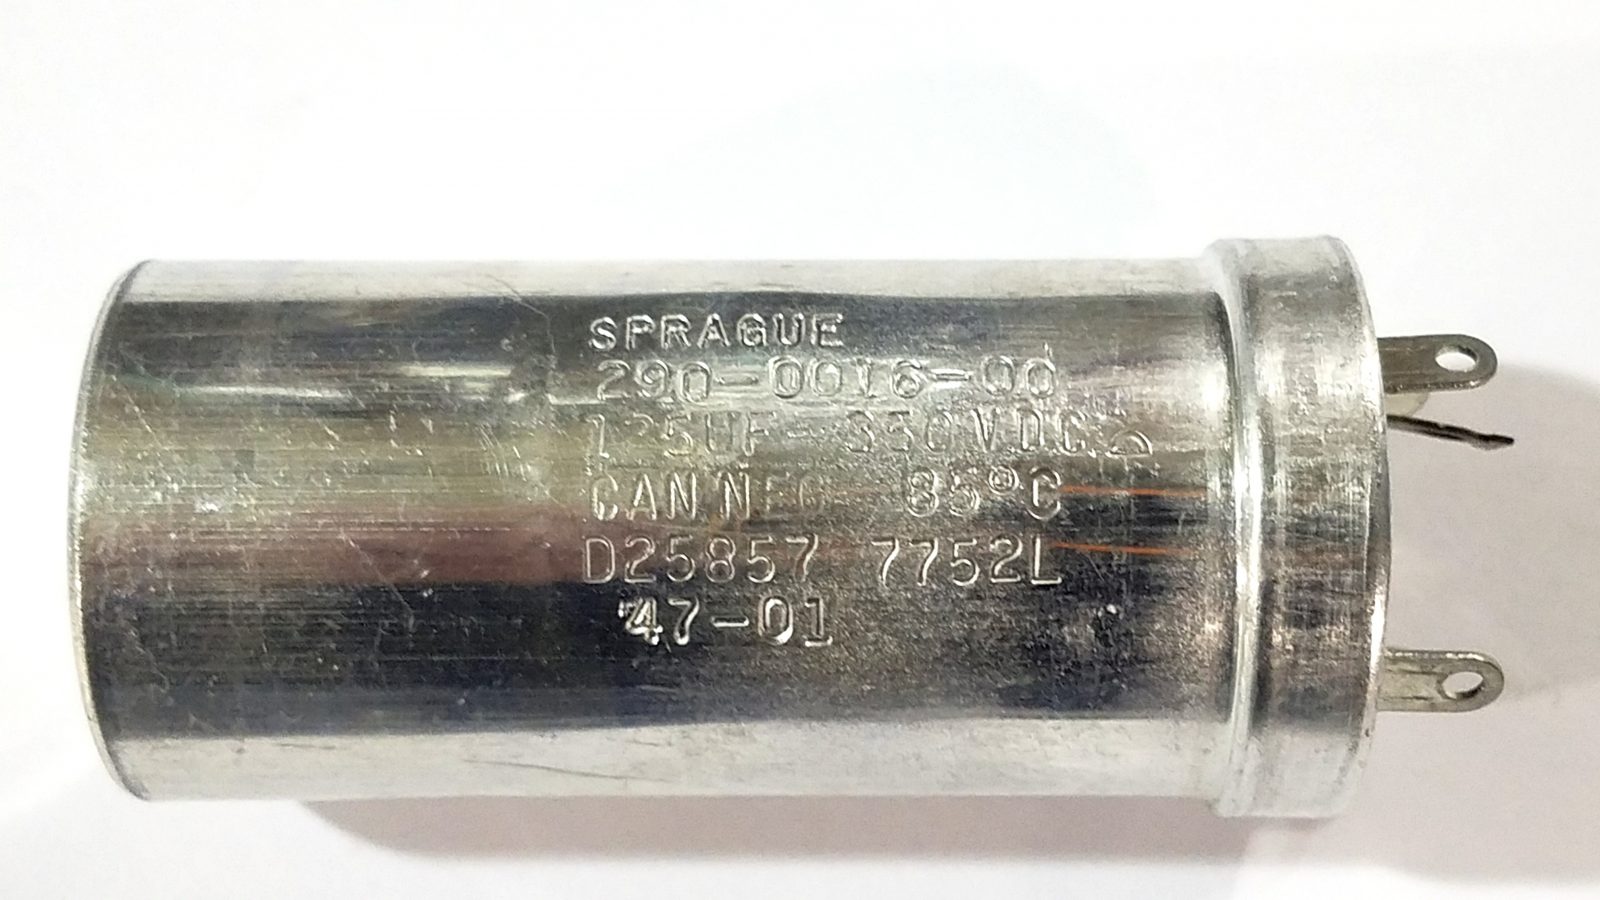 Sprague 290-0016-00 125MFD, 350V Capacitor